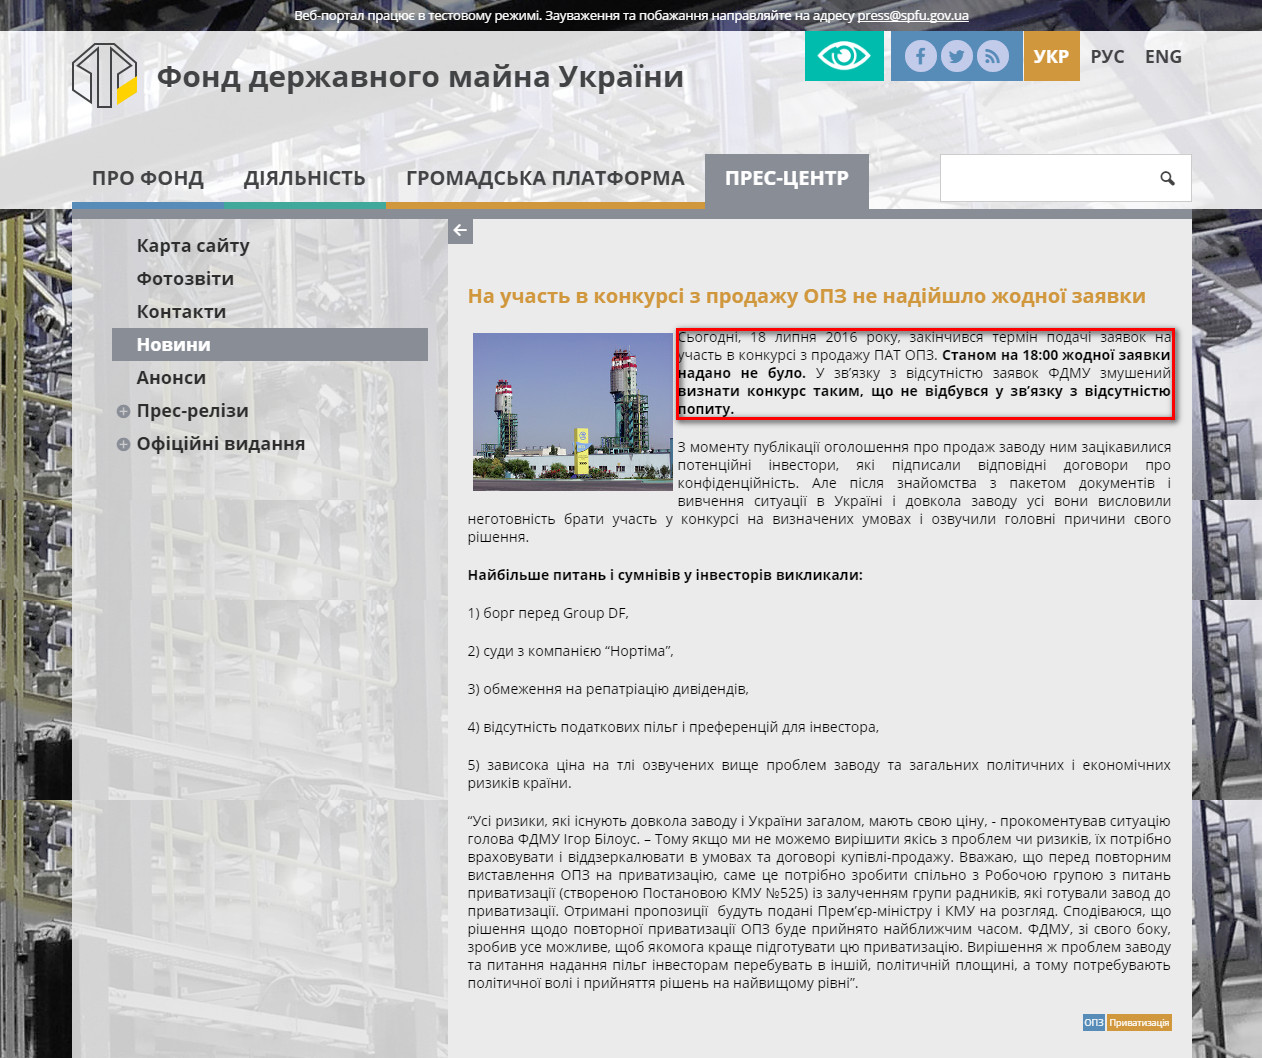 http://www.spfu.gov.ua/ua/news/Na-uchast-v-konkursi-z-prodazhu-OPZ-ne-nadijshlo-zhodnoi-zayavki-1341.html